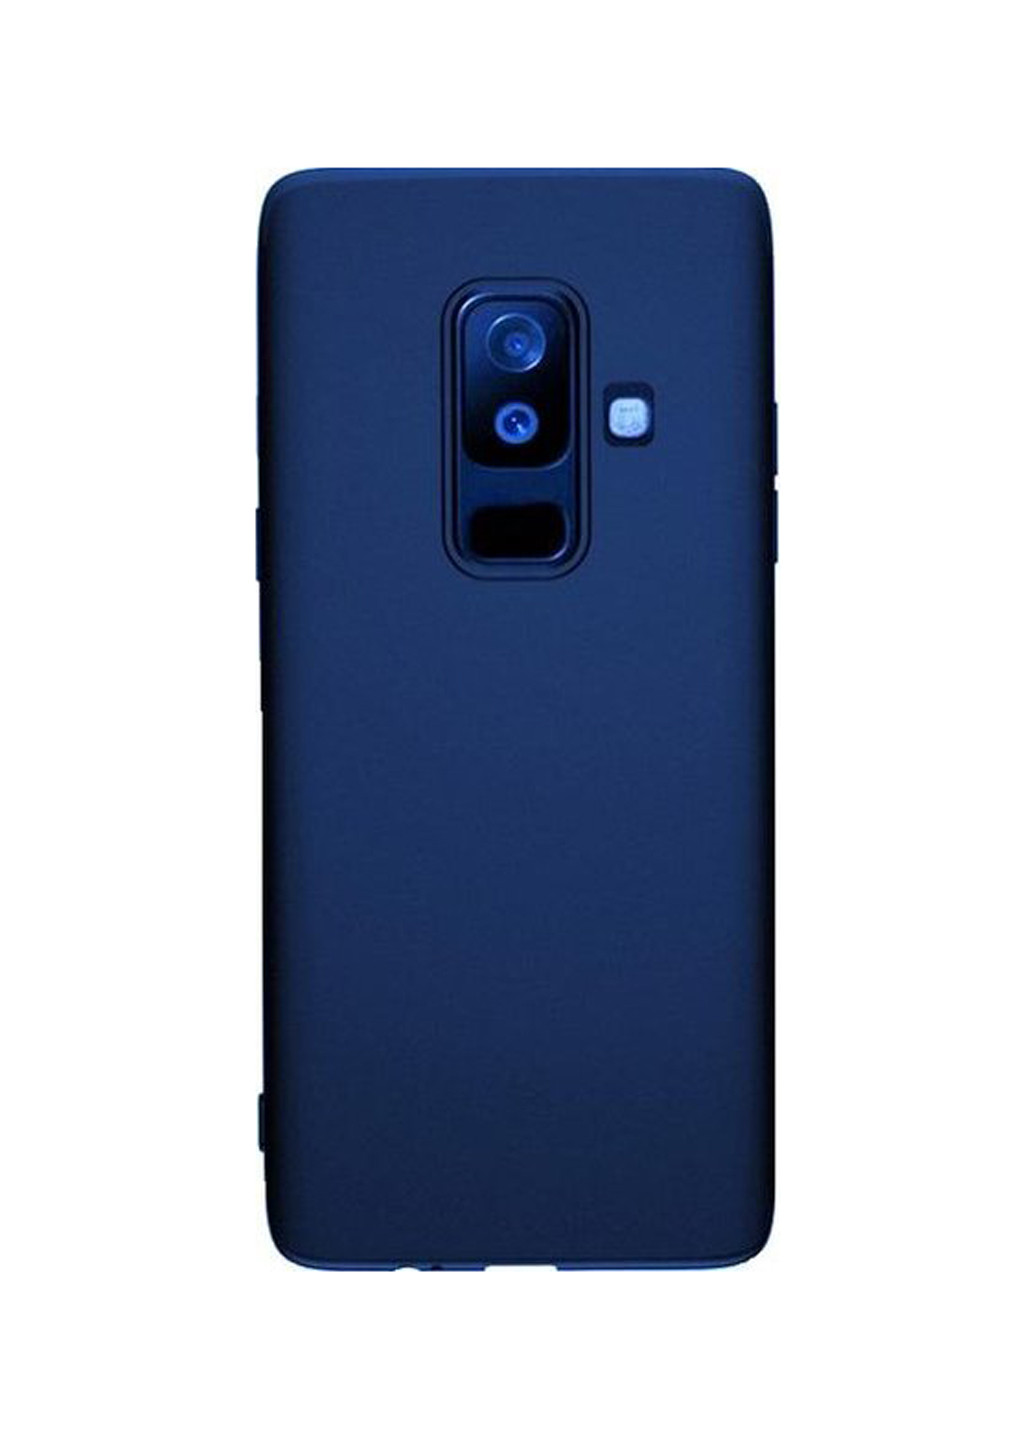 Чохол Samsung A6 + 2018 / A605 - Crystal (Blue) T-PHOX для samsung a6+ 2018/a605 - crystal (blue) (135815792)